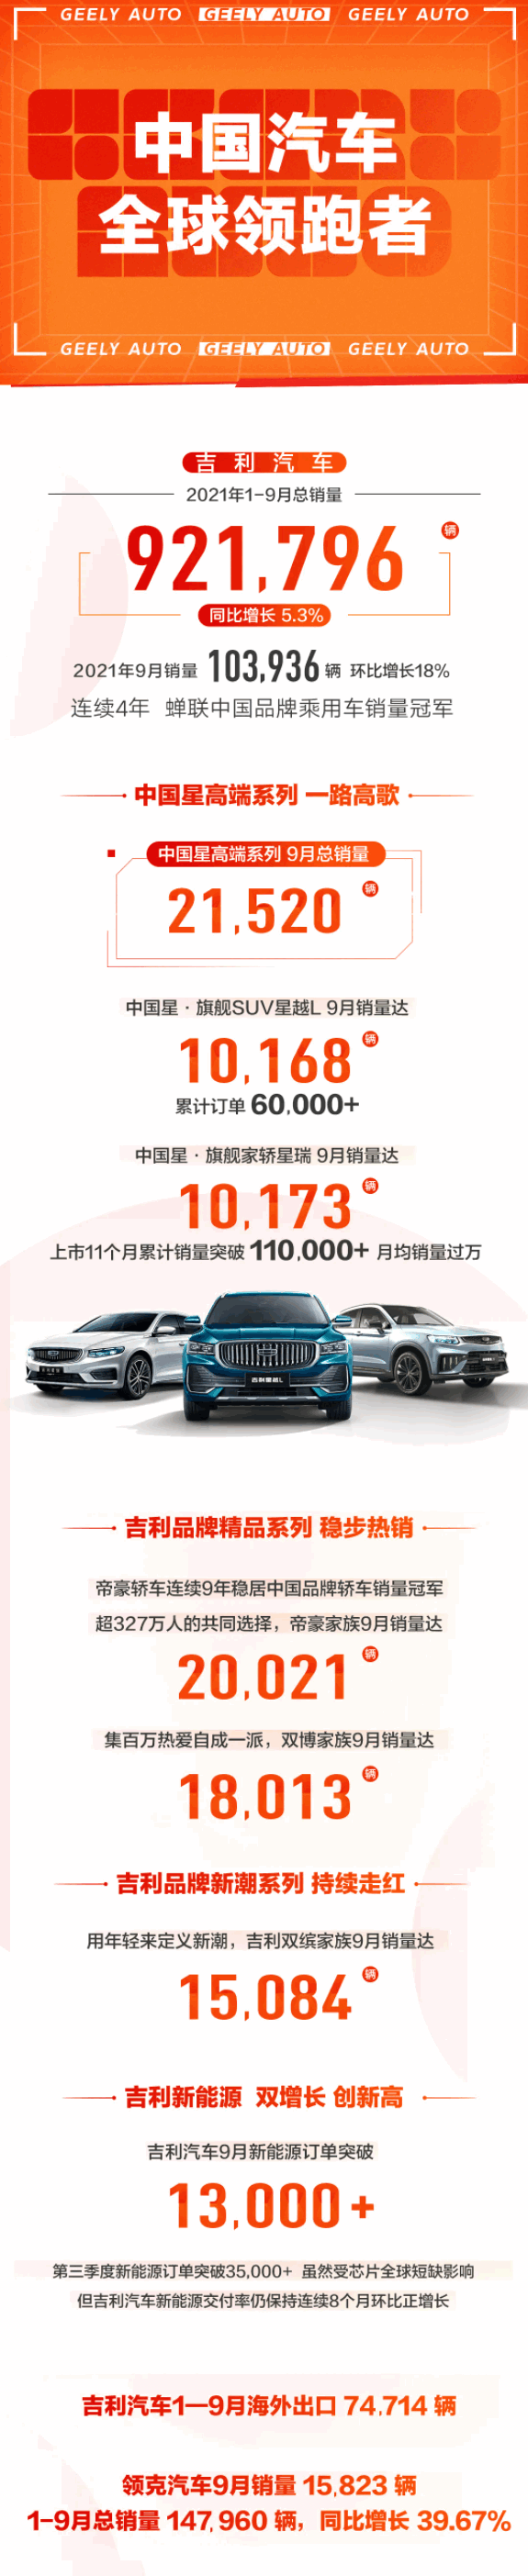 连续四年中国乘用车销冠！吉利前9月销量破90万辆大关